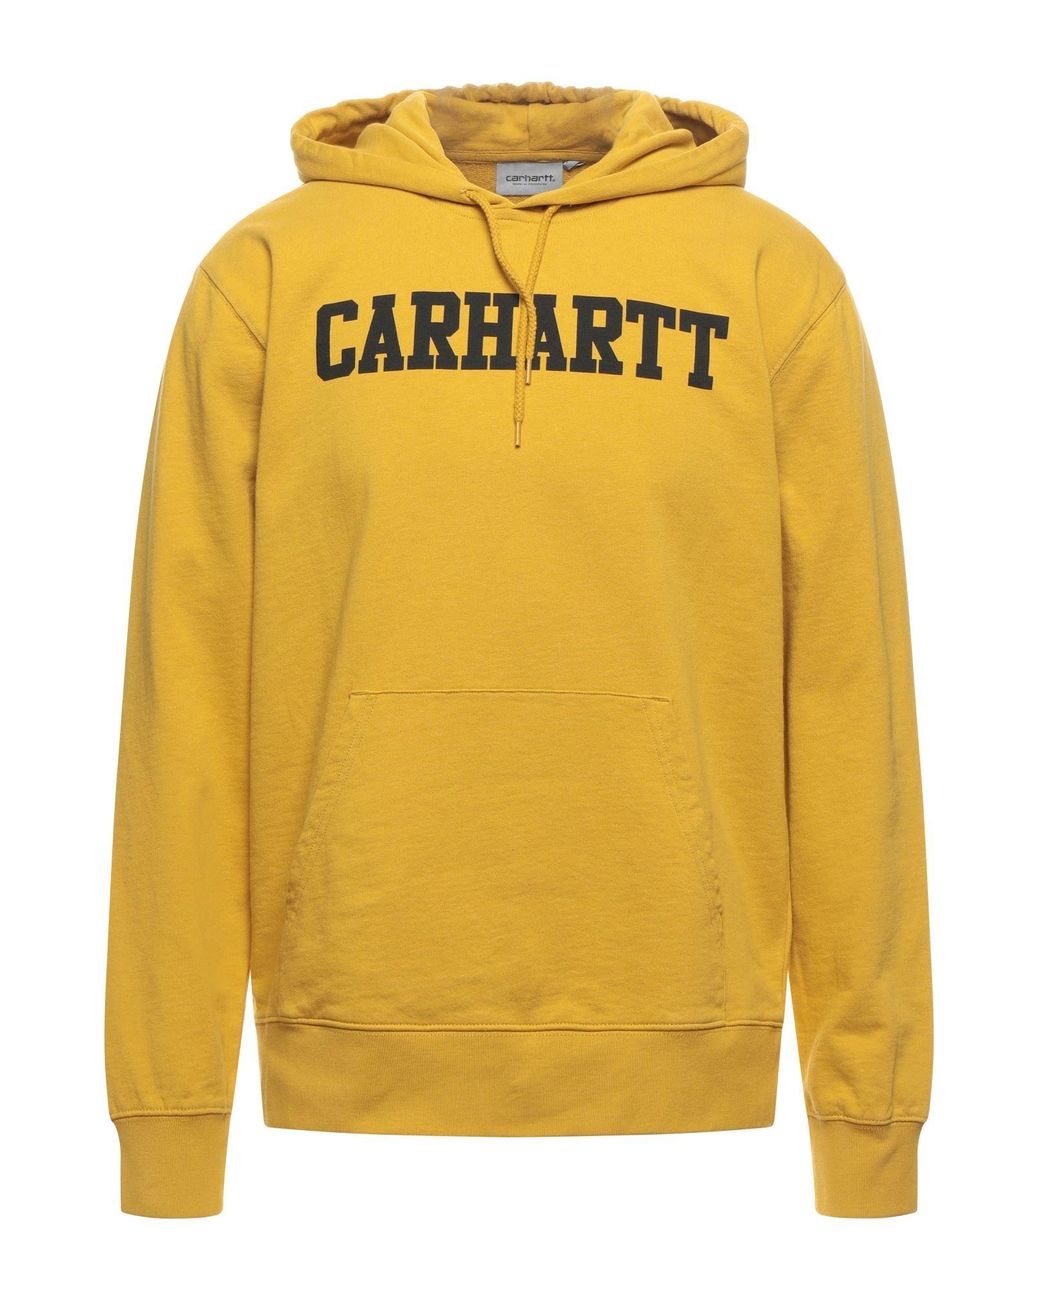 Carhartt Fleece Sweatshirt in Yellow for Men - Lyst